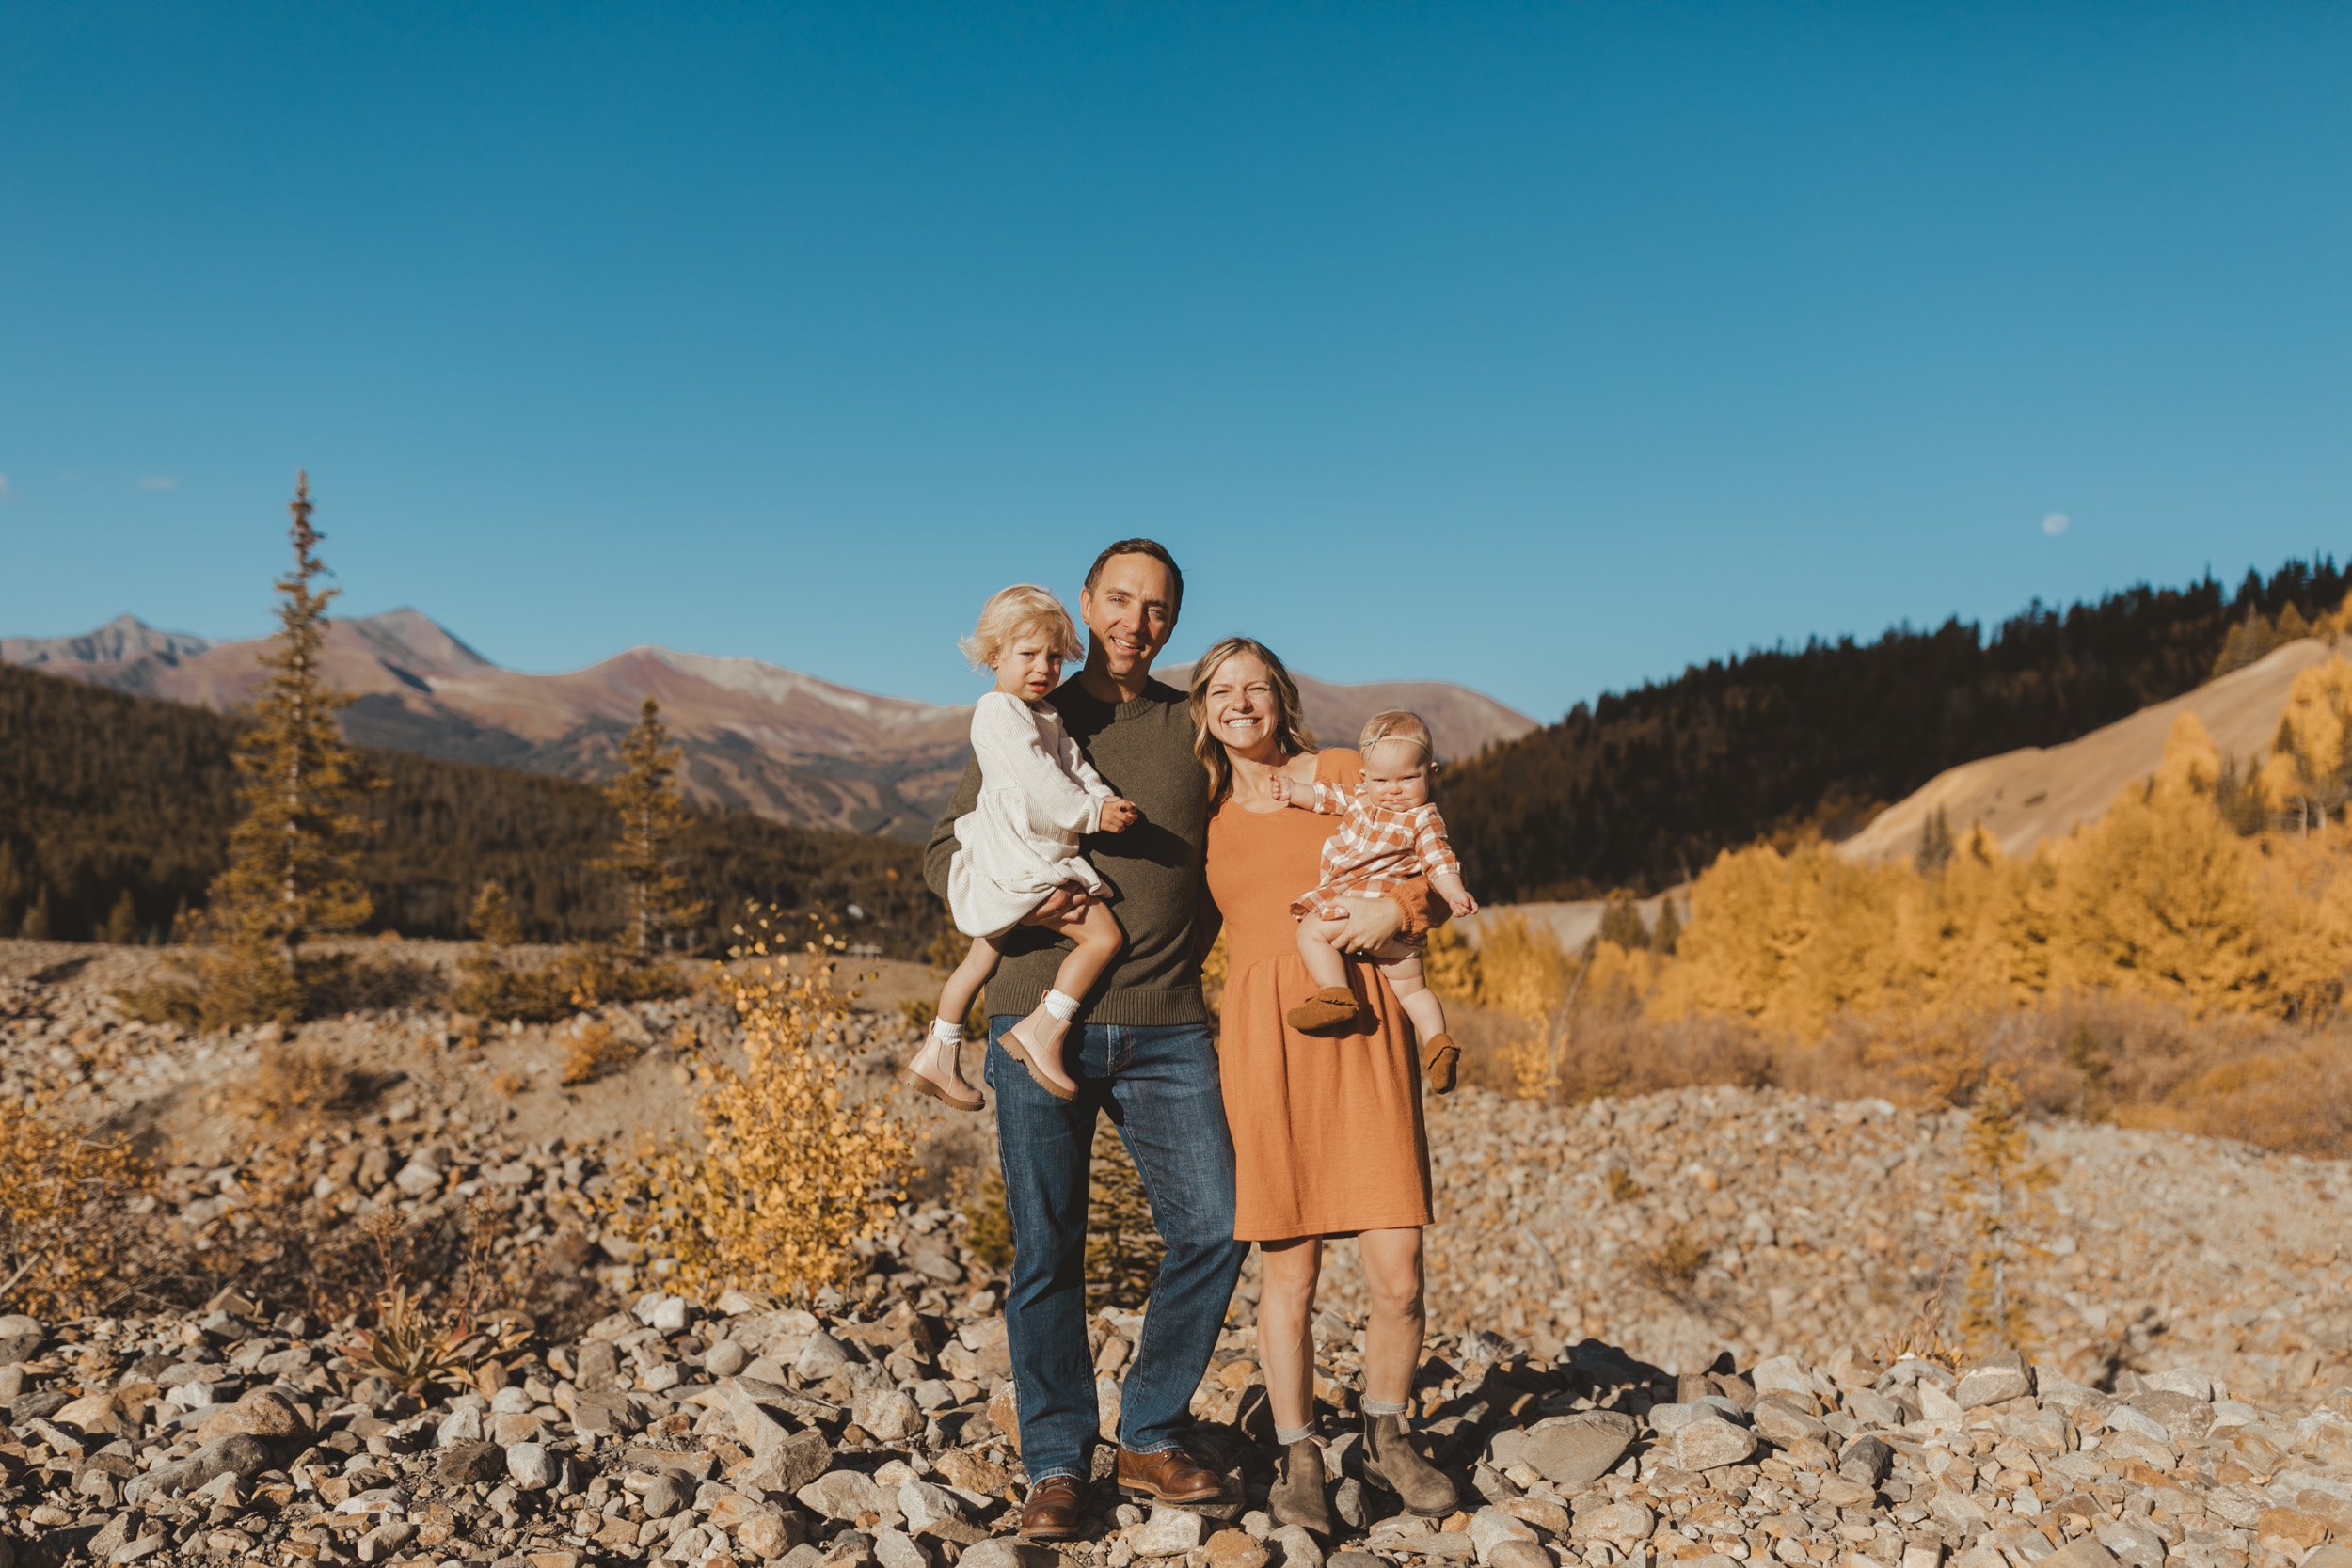 breckenridge-colorado-mountain-family-photoshoot-4.jpg